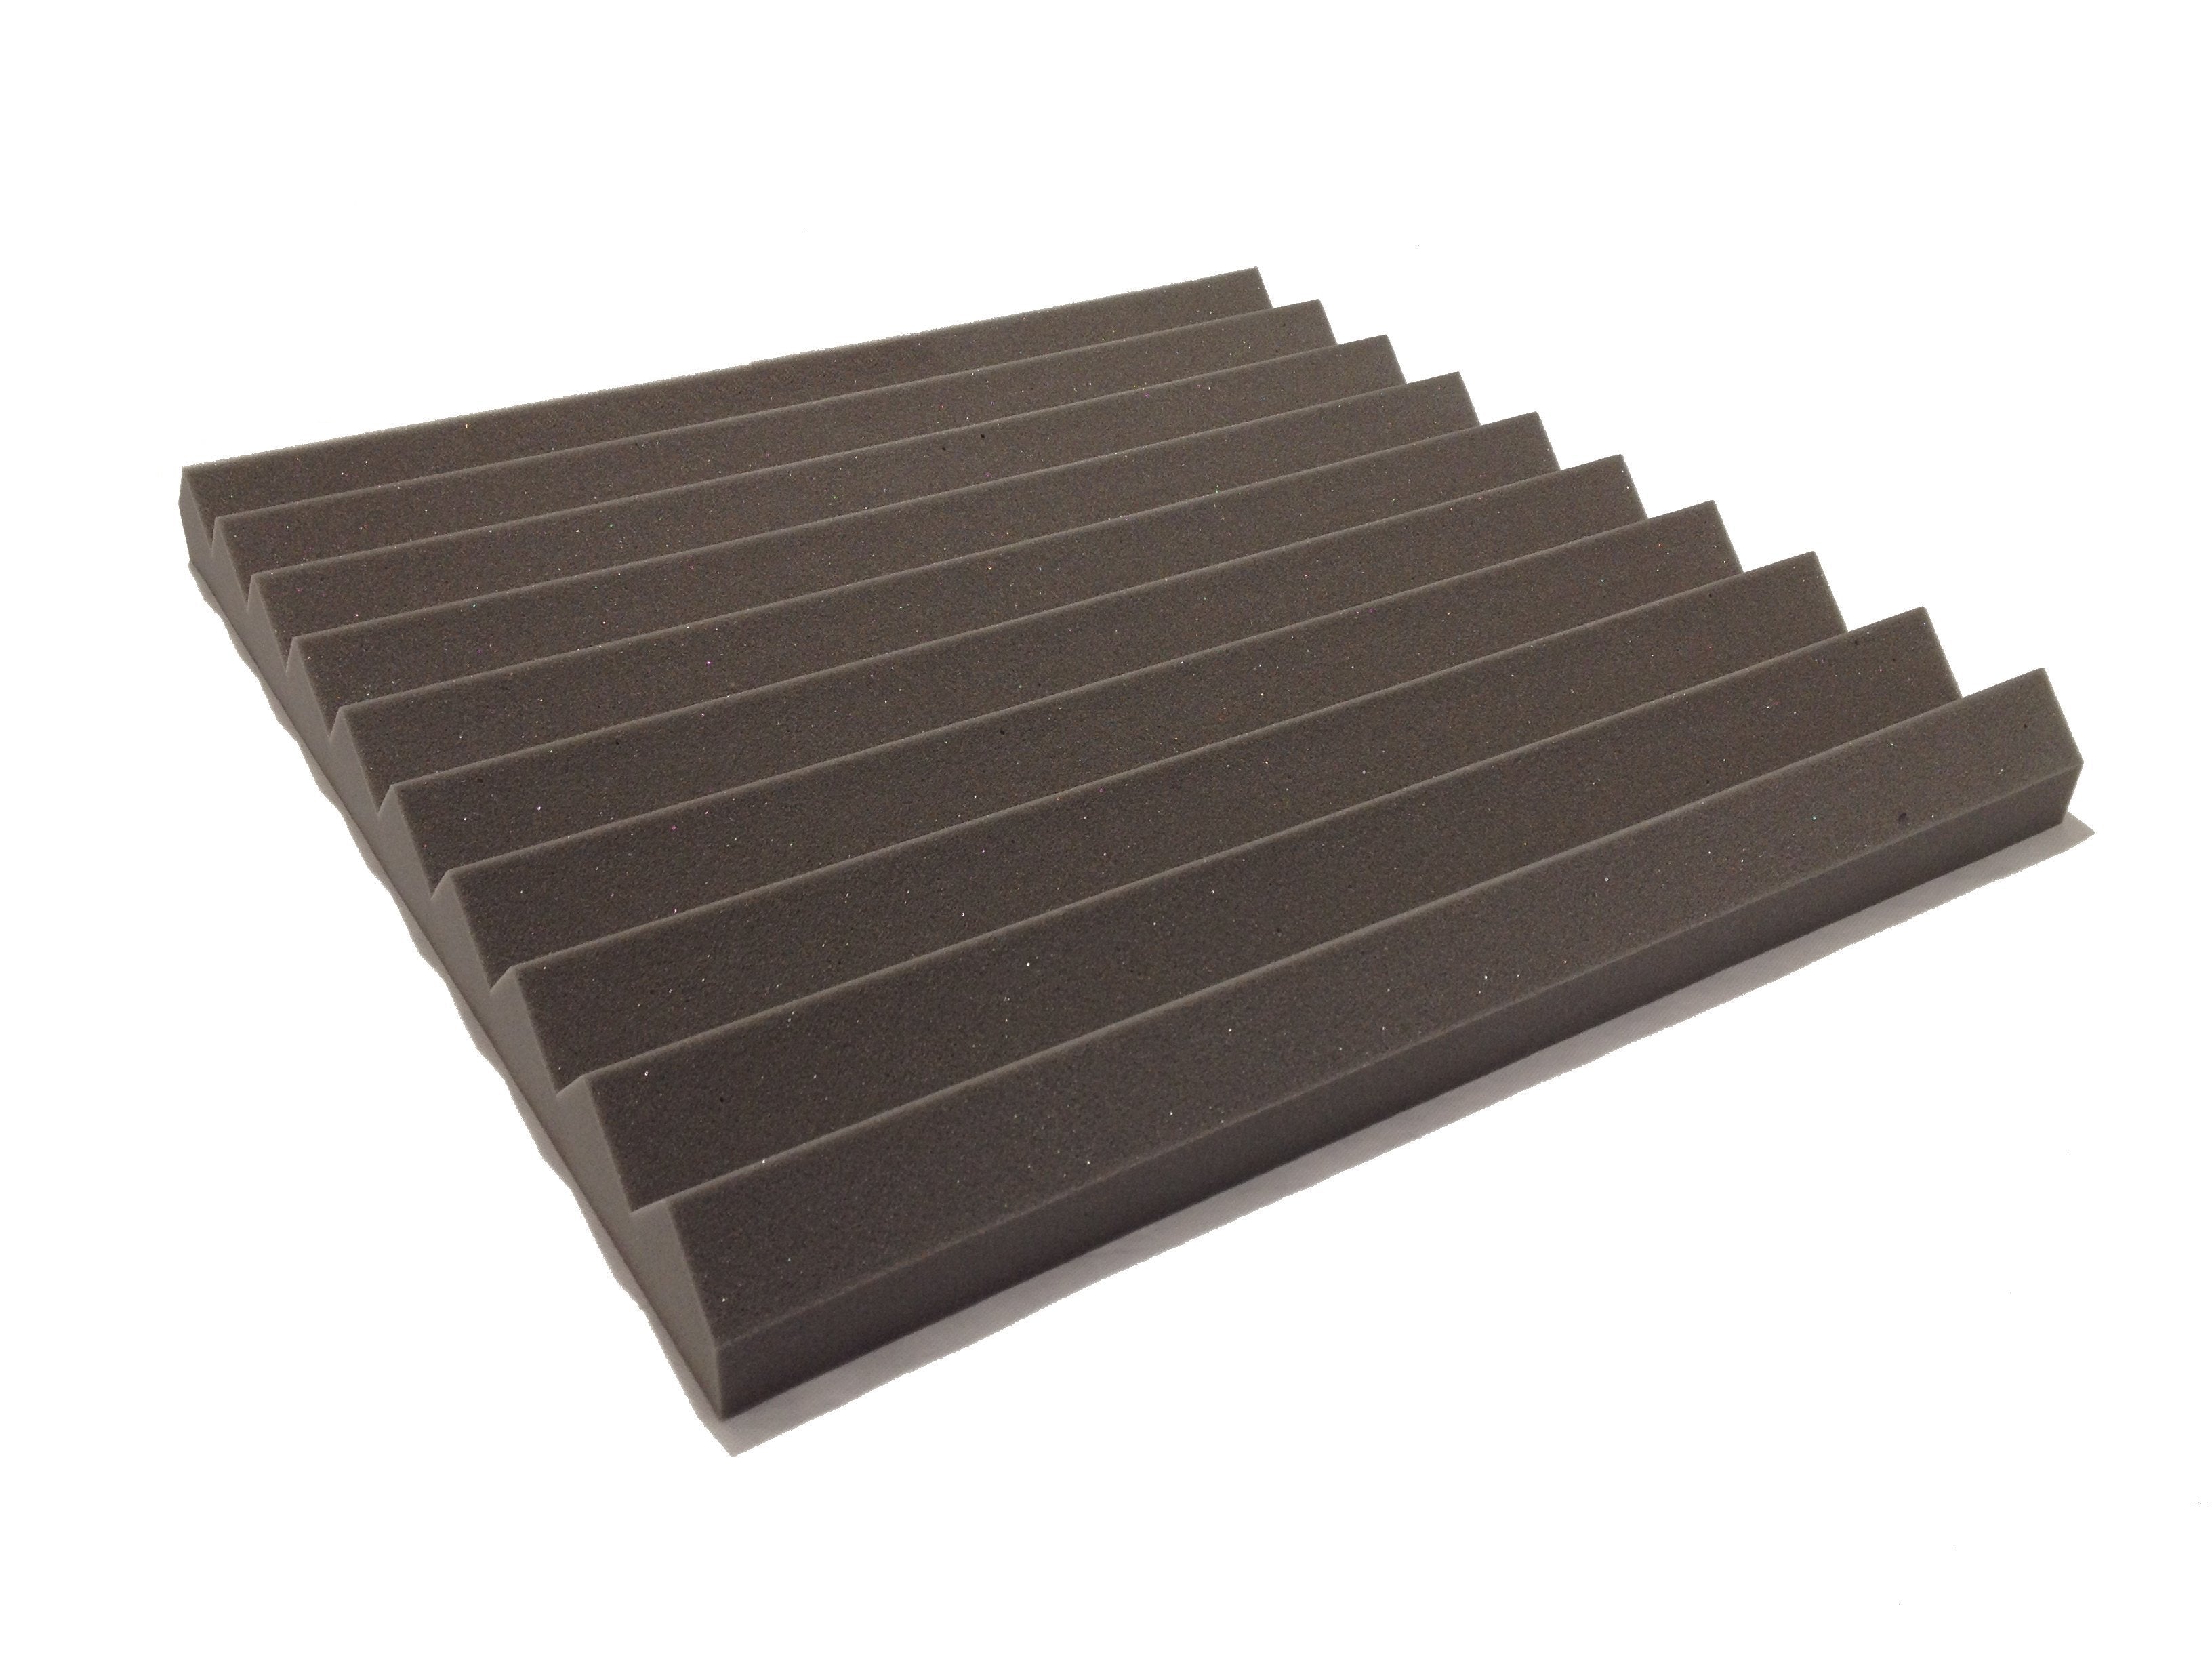 Wedge PRO 30" Acoustic Studio Foam Tile Kit - Advanced Acoustics